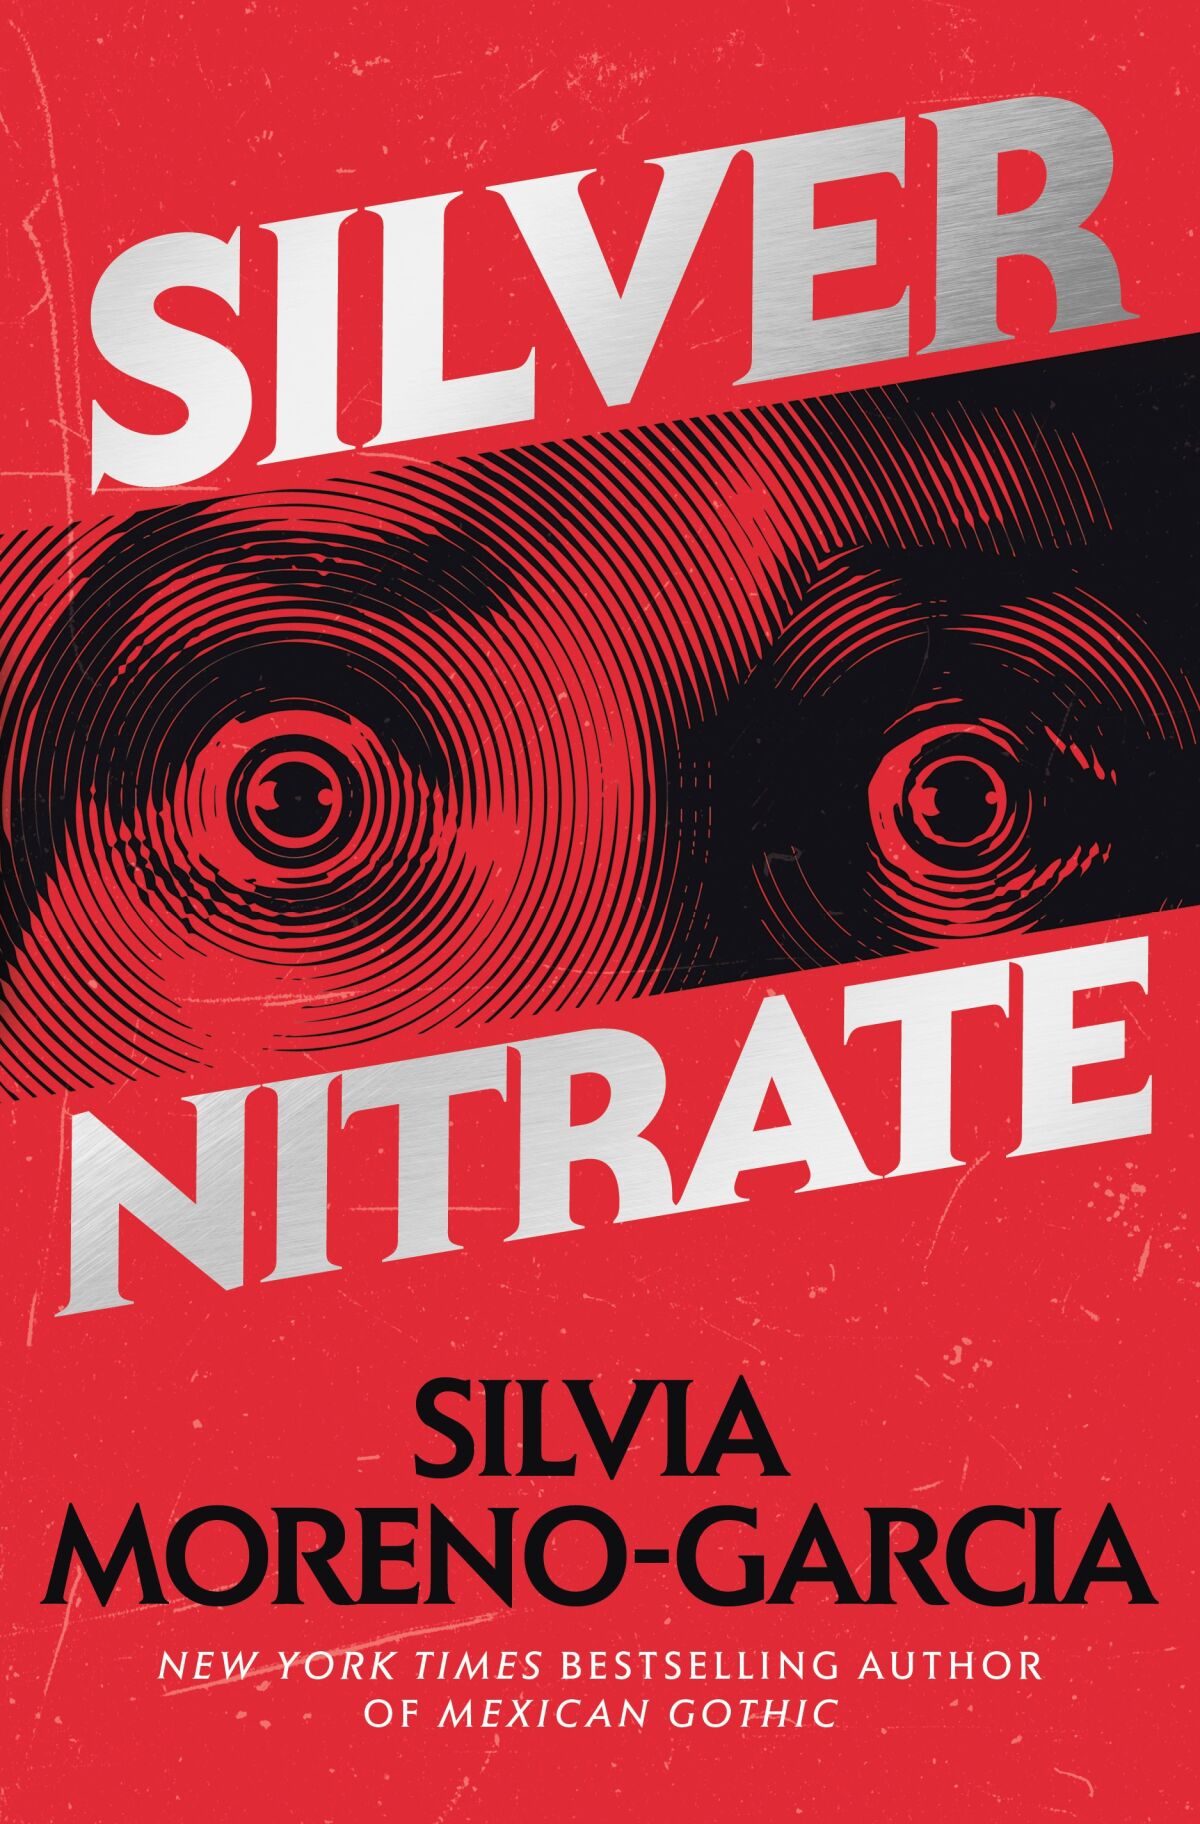 Das Buchcover zu „Silver Nitrate“ von Silvia Moreno-Garcia zeigt weit geöffnete Augen auf rotem Hintergrund